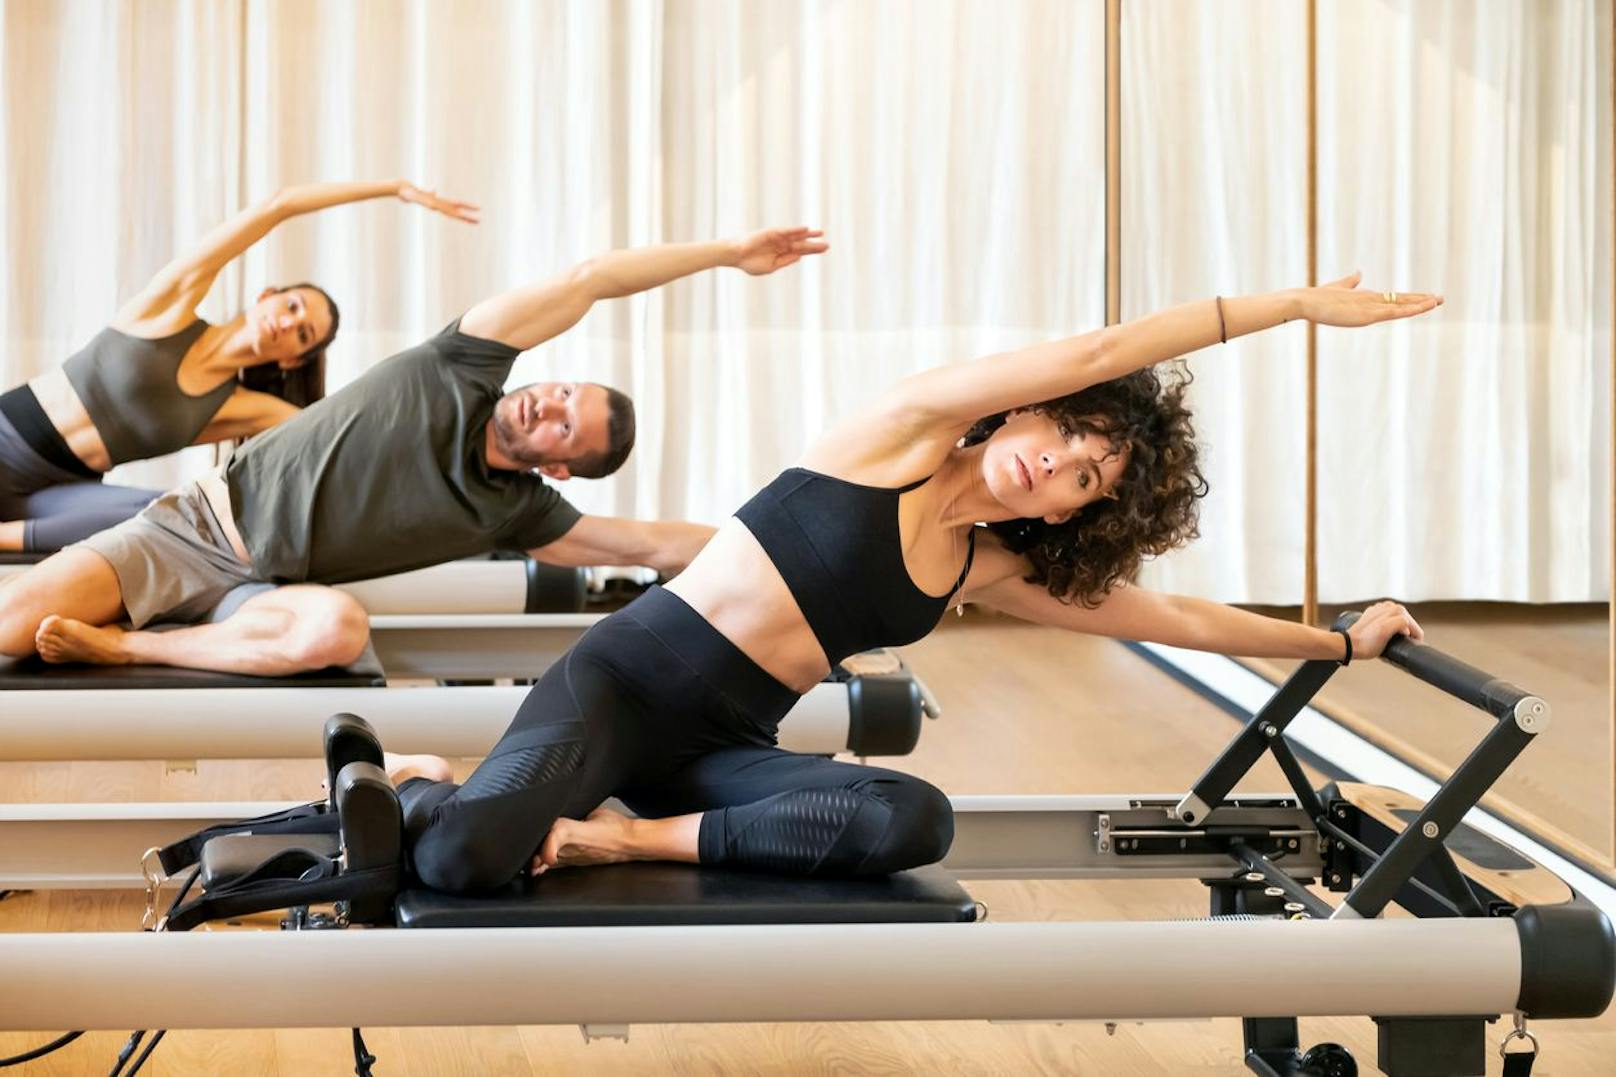 Übungen, die ebenso intensiv sind, wären ein herausforderndes Yoga-Training oder ein Pilates-Training. Diese müssen nicht täglich wiederholt werden, ansonsten überanstrengst du deinen Körper.